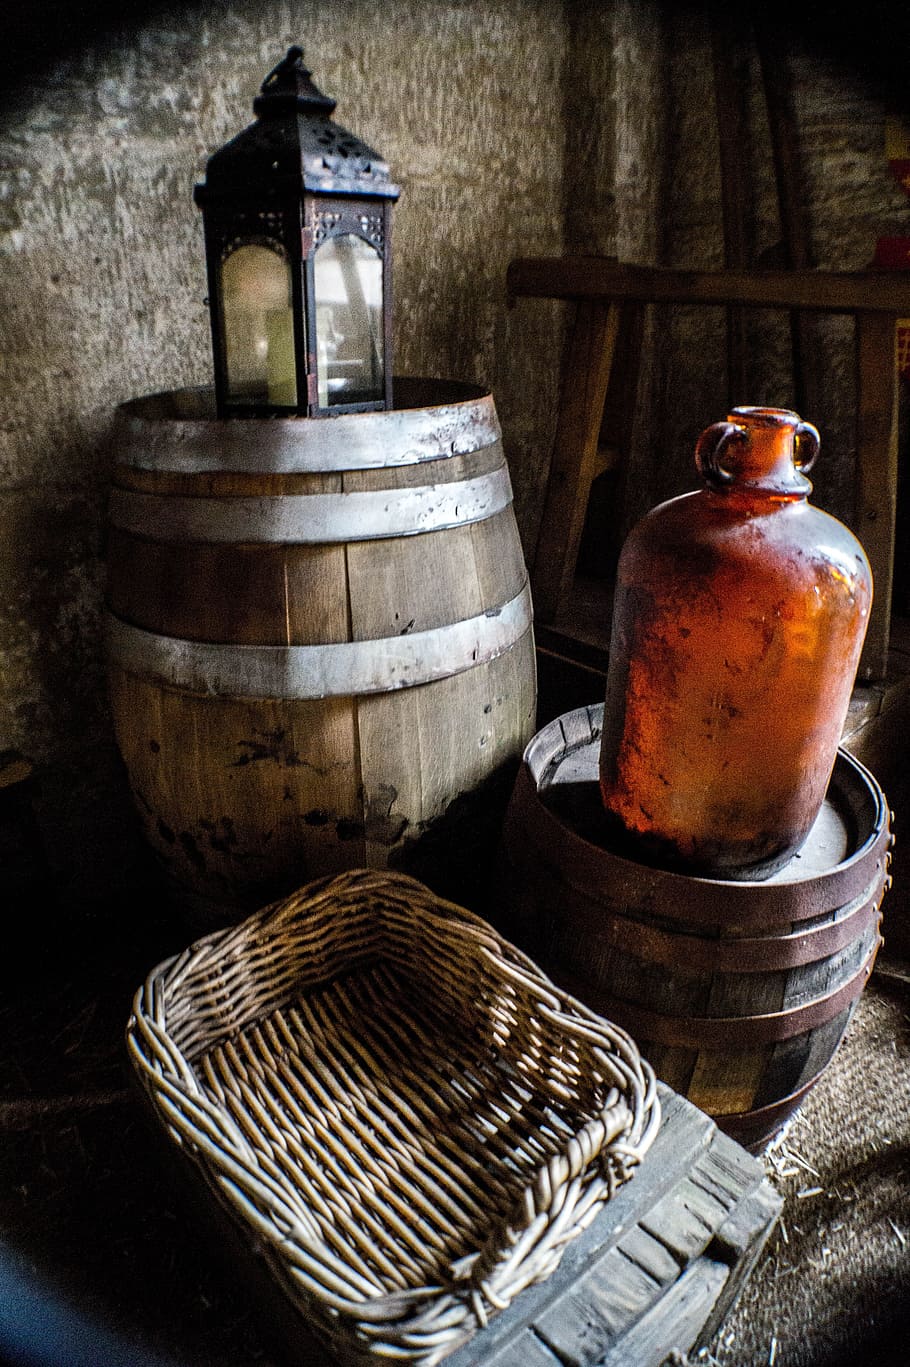 Barrel, Basket, Glass Bottle, Cellar, wooden, old, wicker, rustic, lantern, wood